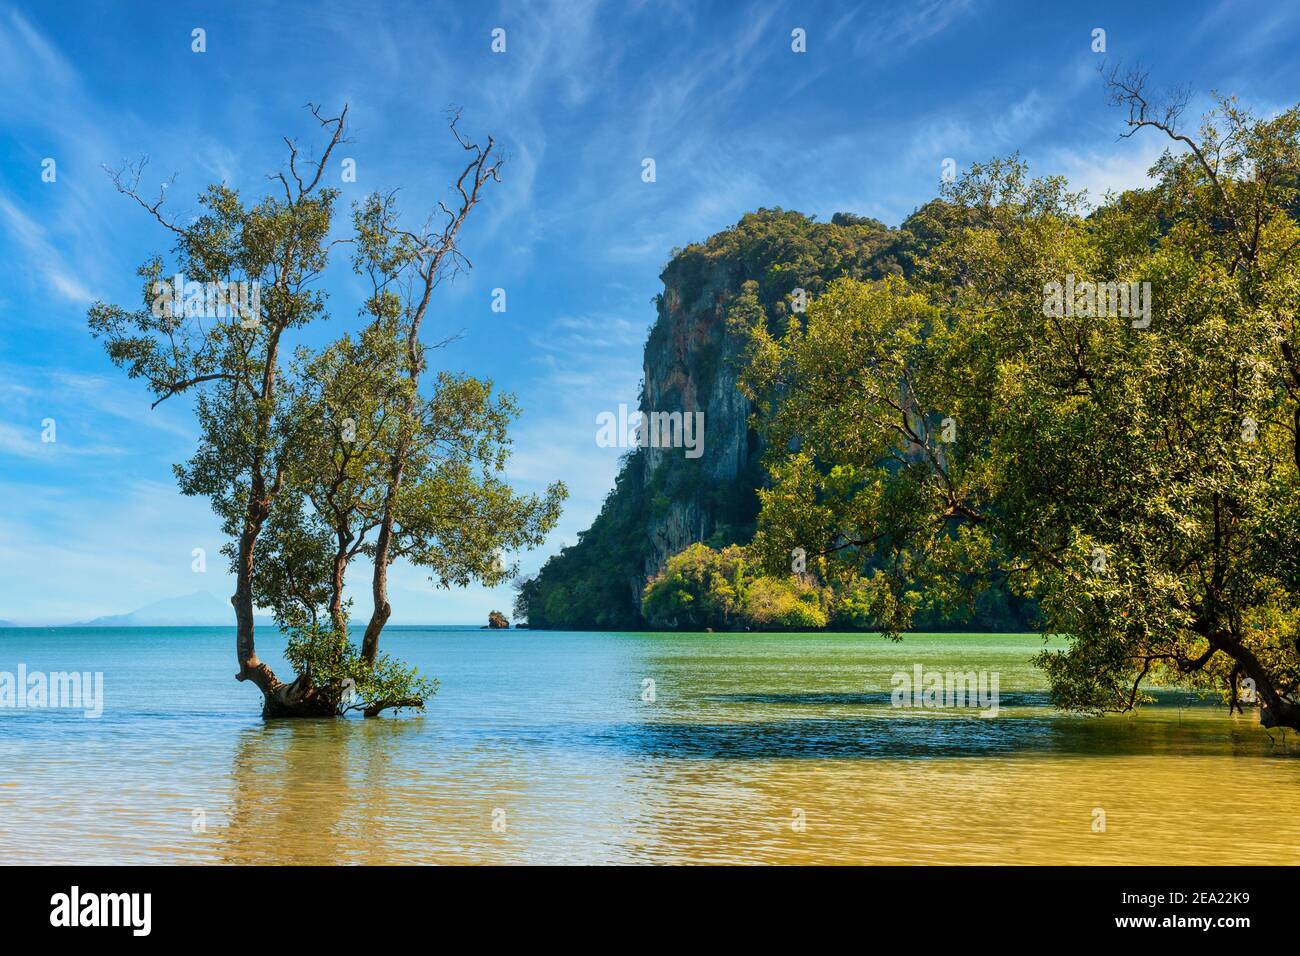 Les mangroves poussent dans les eaux placides au large de Krabi Thaïlande Banque D'Images